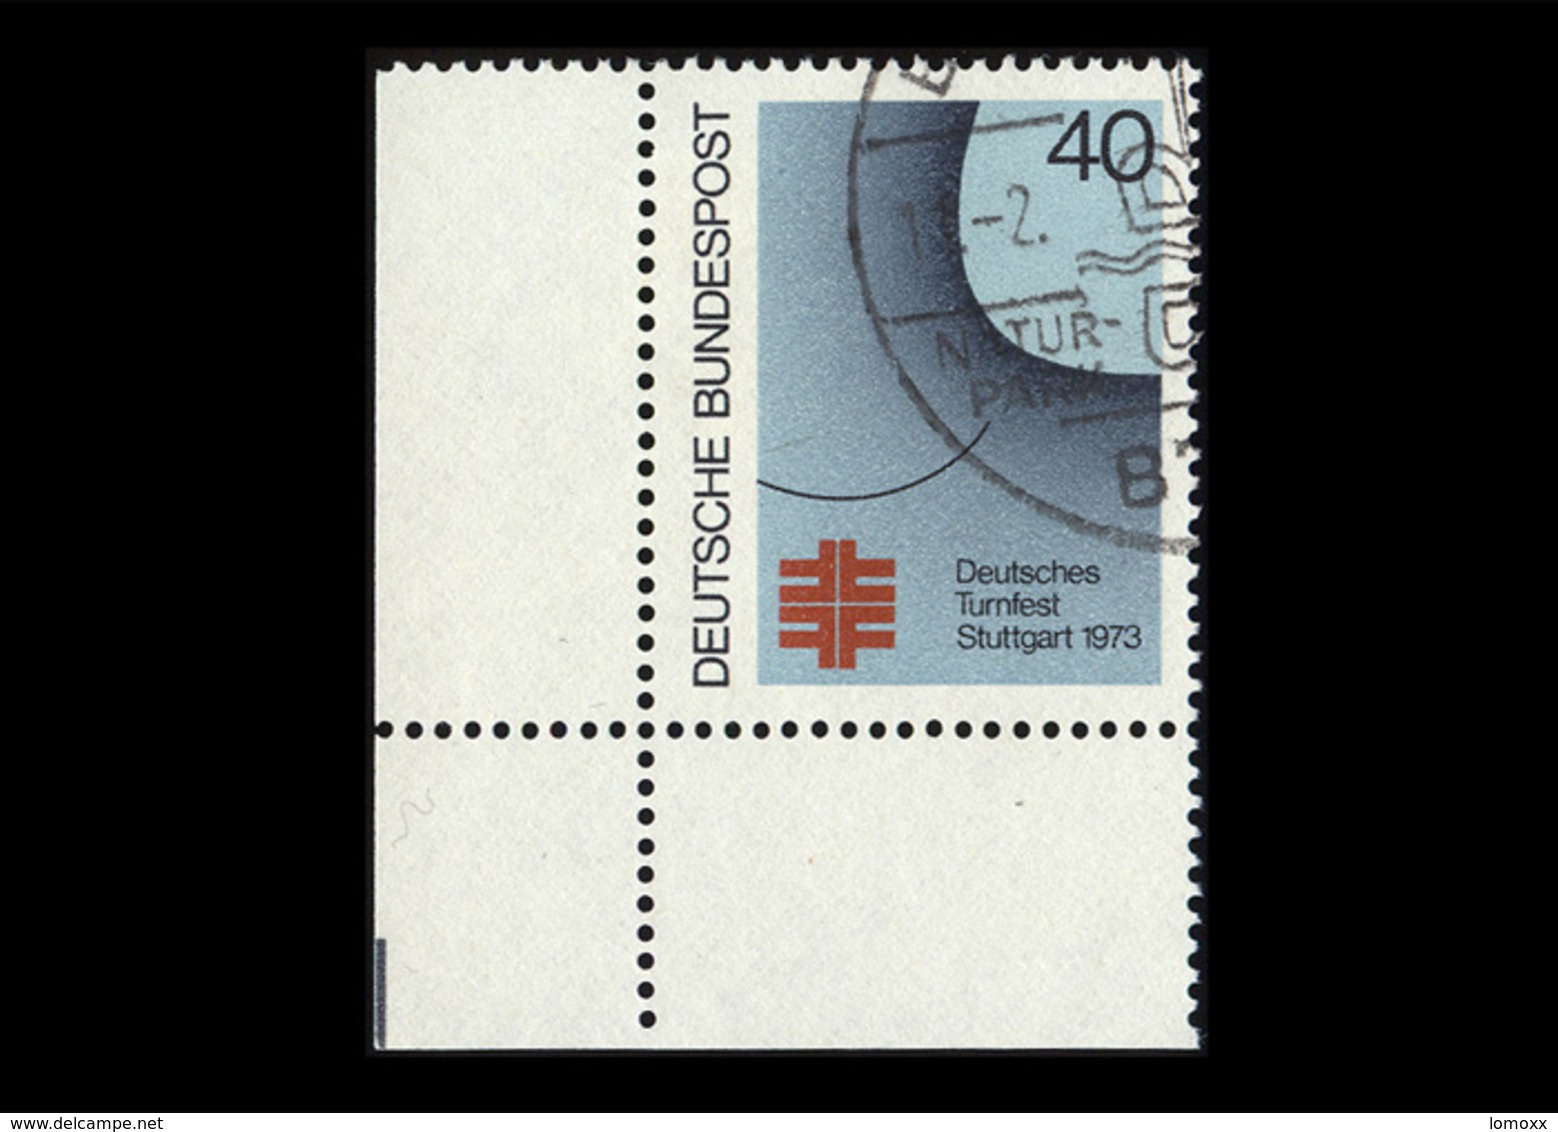 BRD 1973, Michel-Nr. 763, Deutsches Turnfest Stuttgart, 40 Pf., Eckrand Links Unten, Gestempelt - Gebraucht